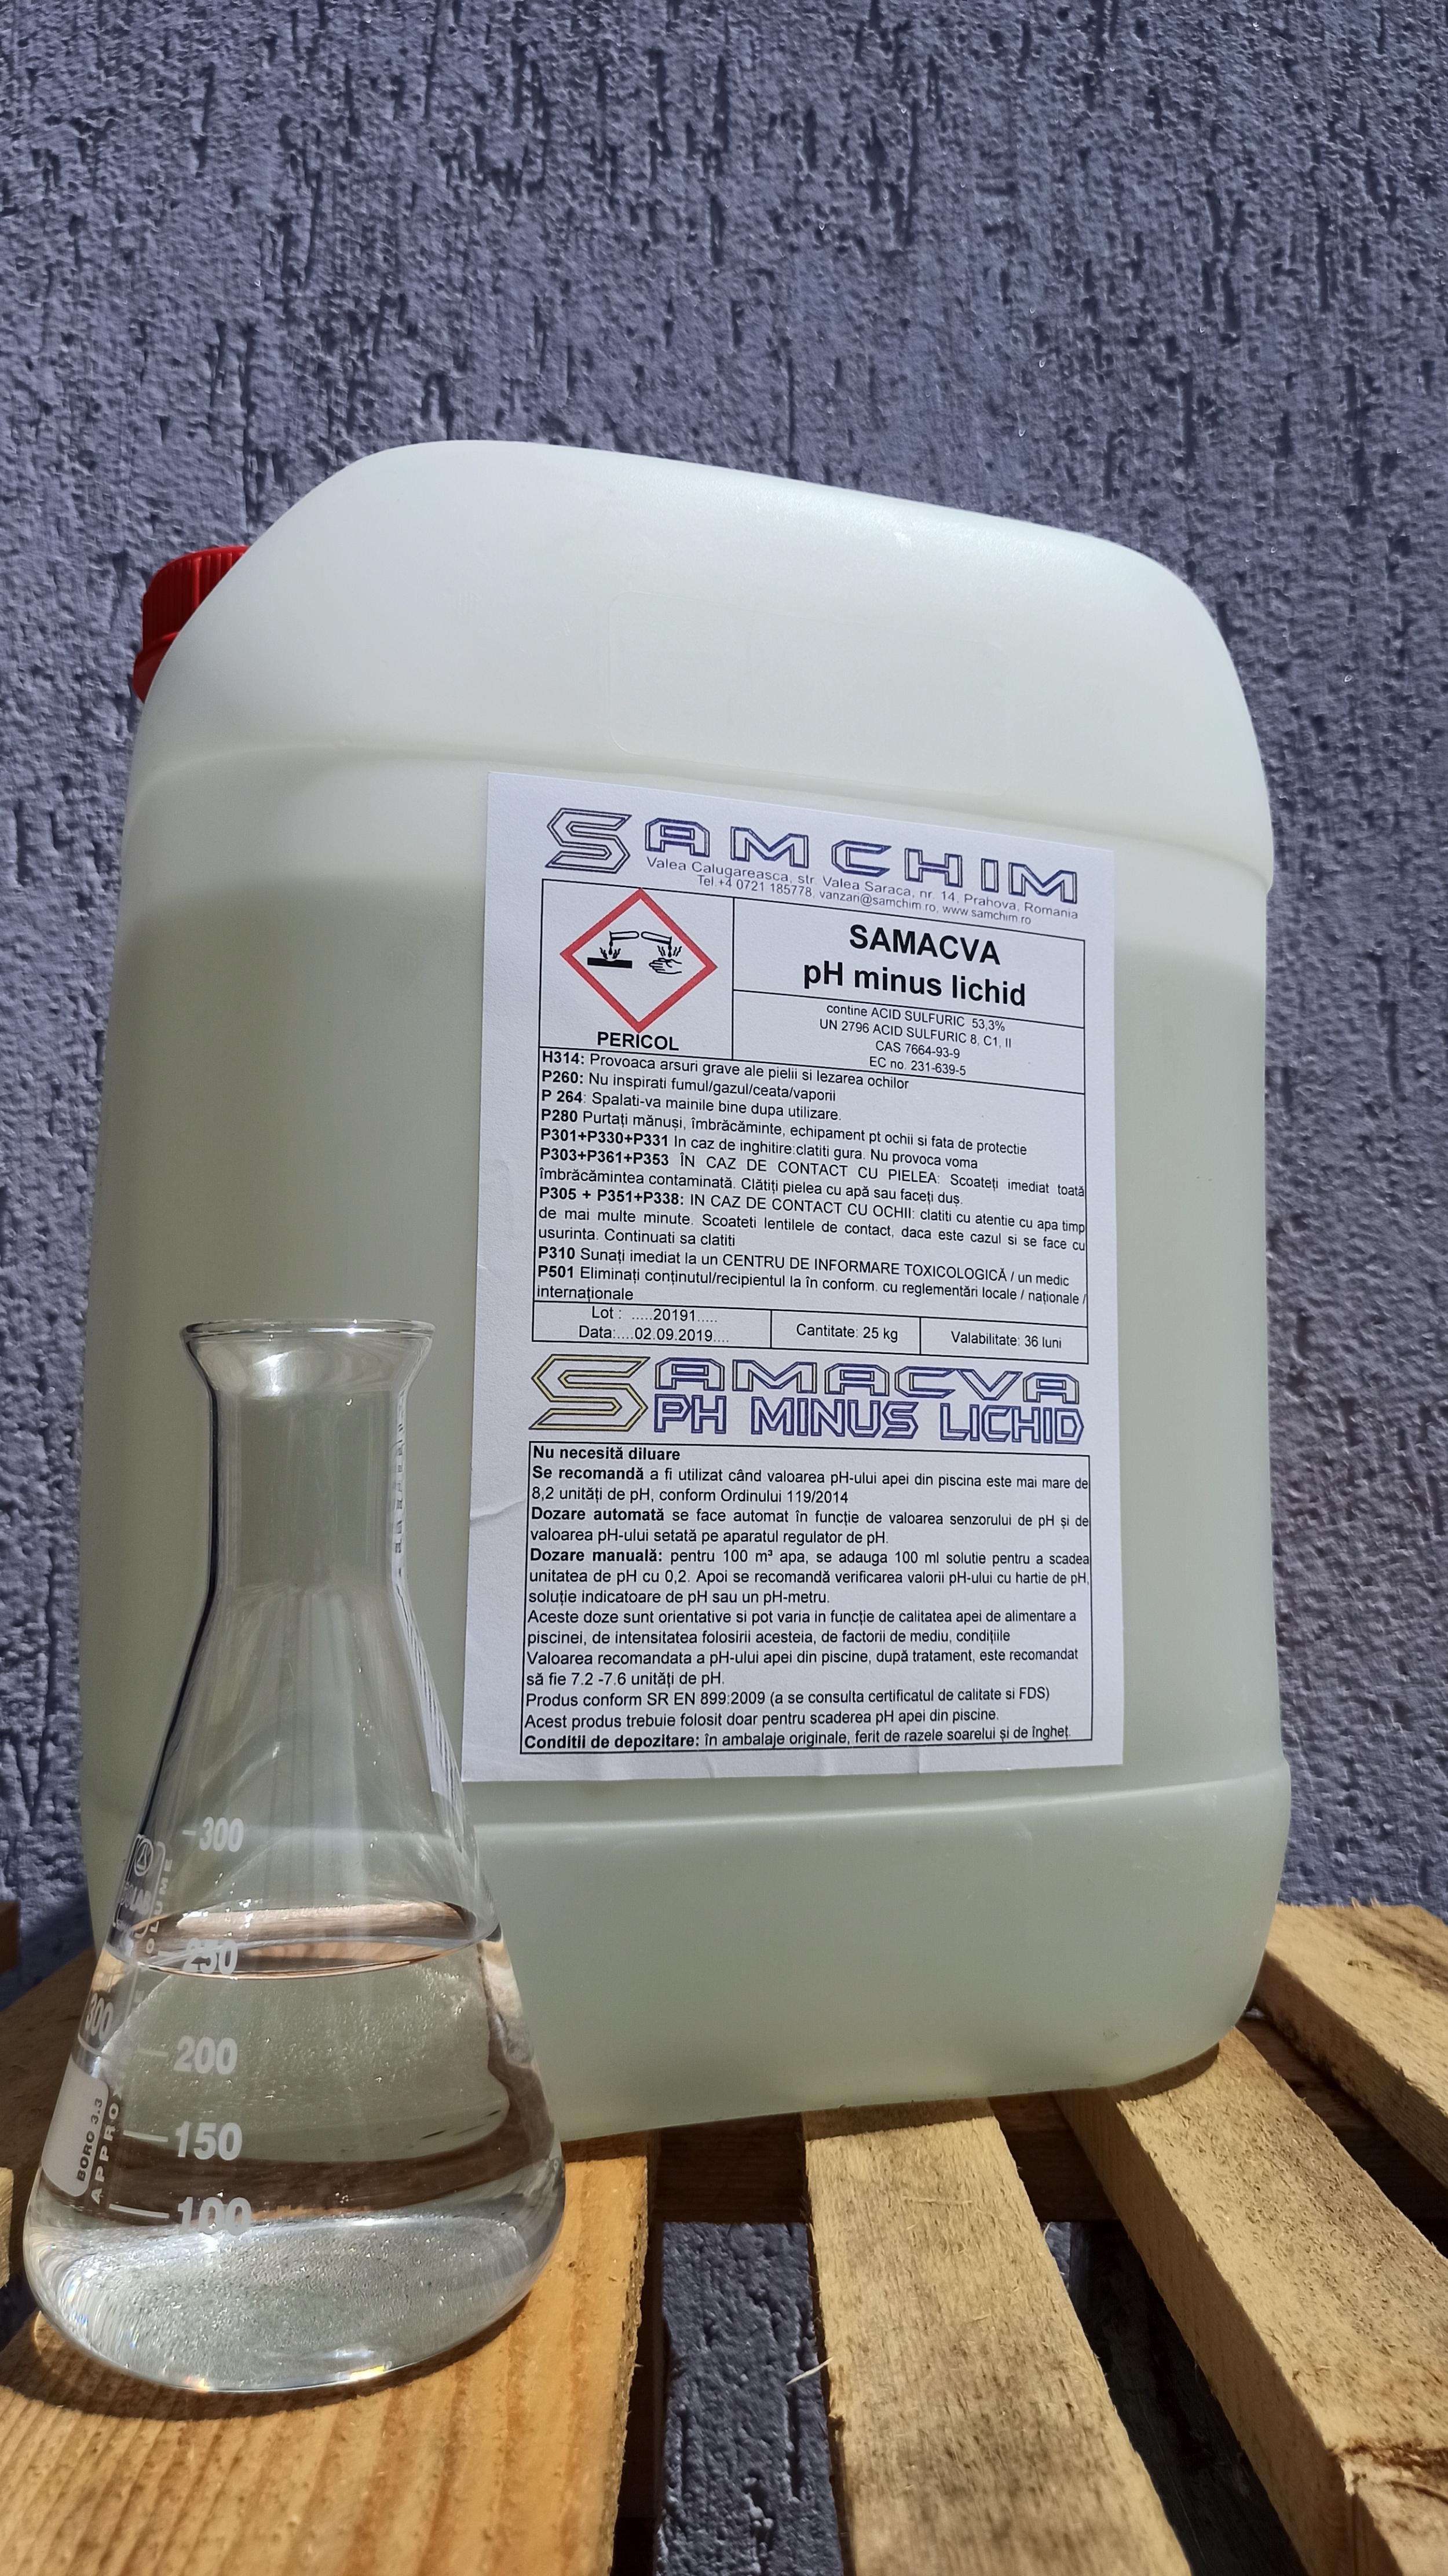 PH minus lichid - Acid sulfuric 40-53%